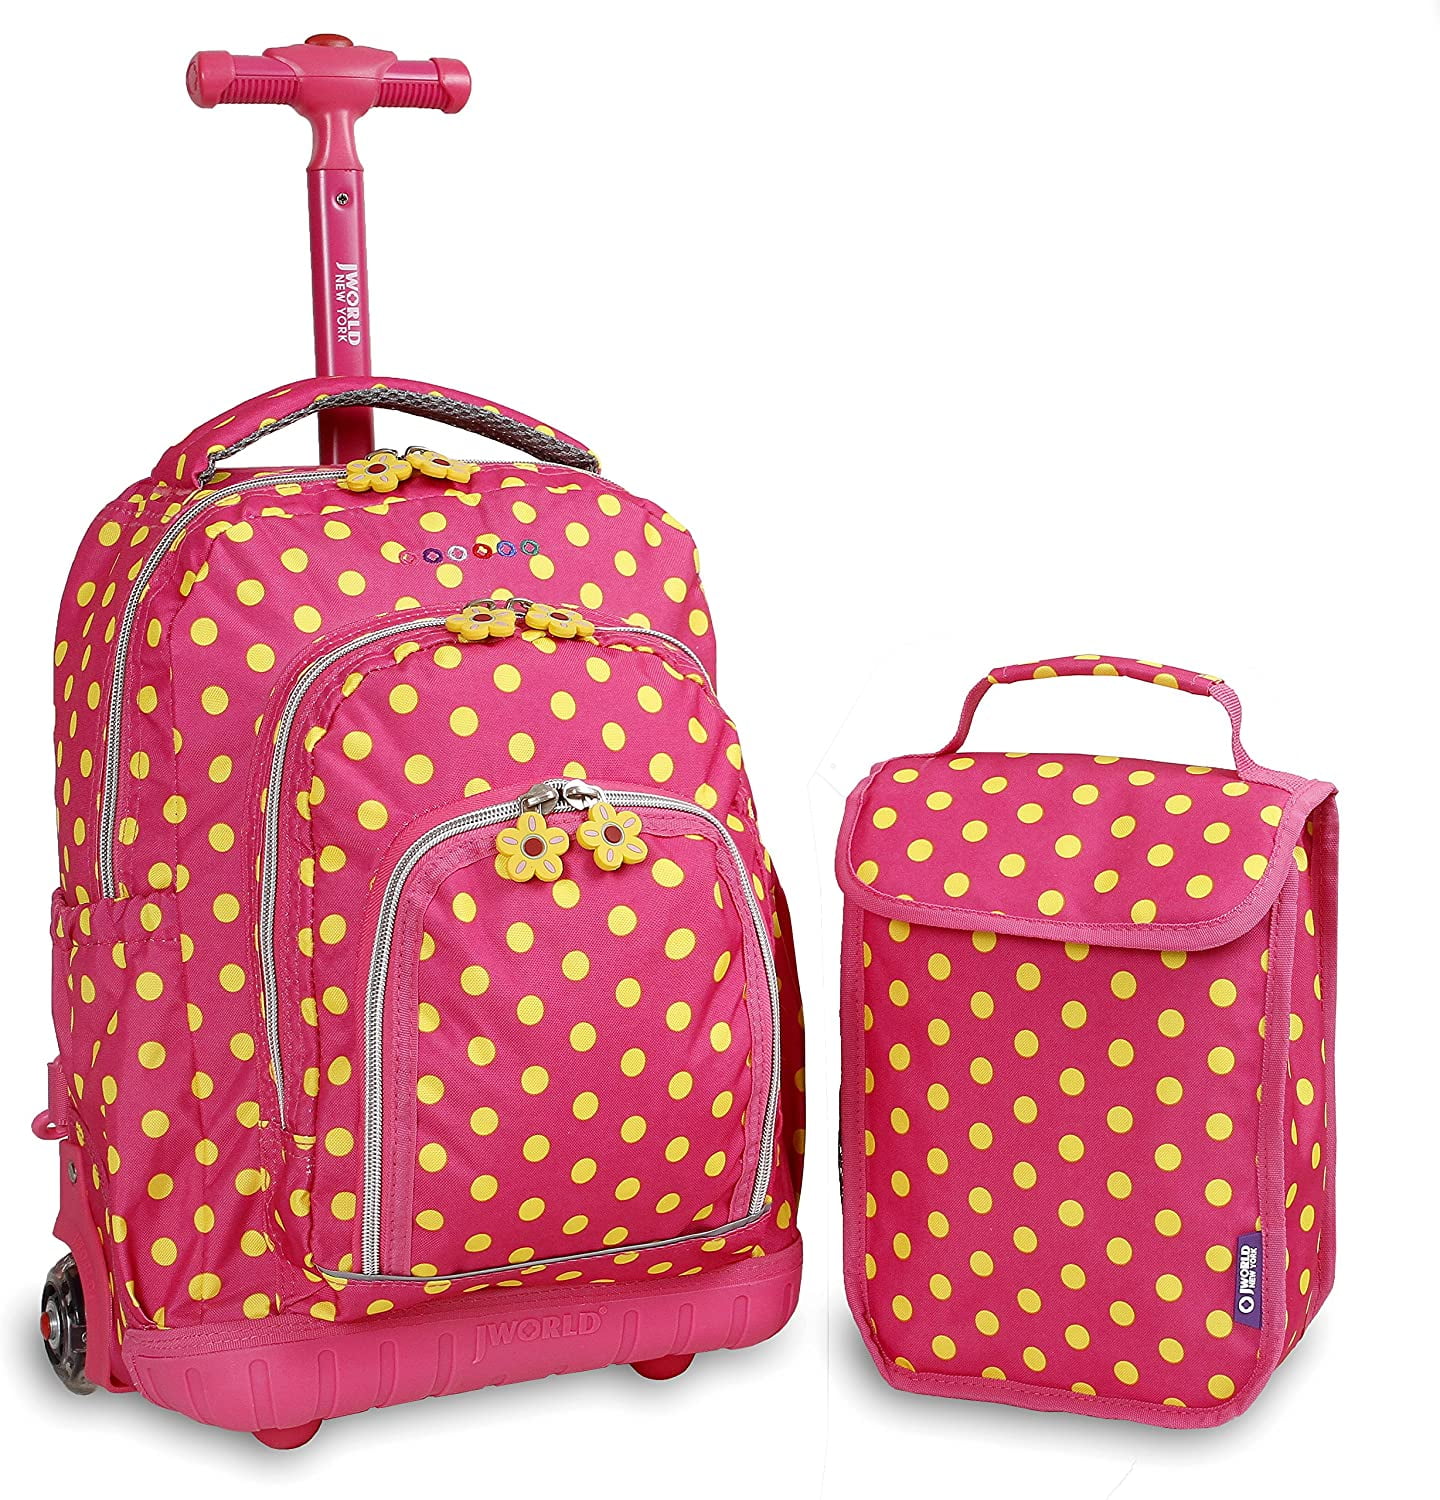 HARRY POTTER Backpack School Student Bag Bookbag 3pcs Lunch Bag Set Lot Kid Gift 